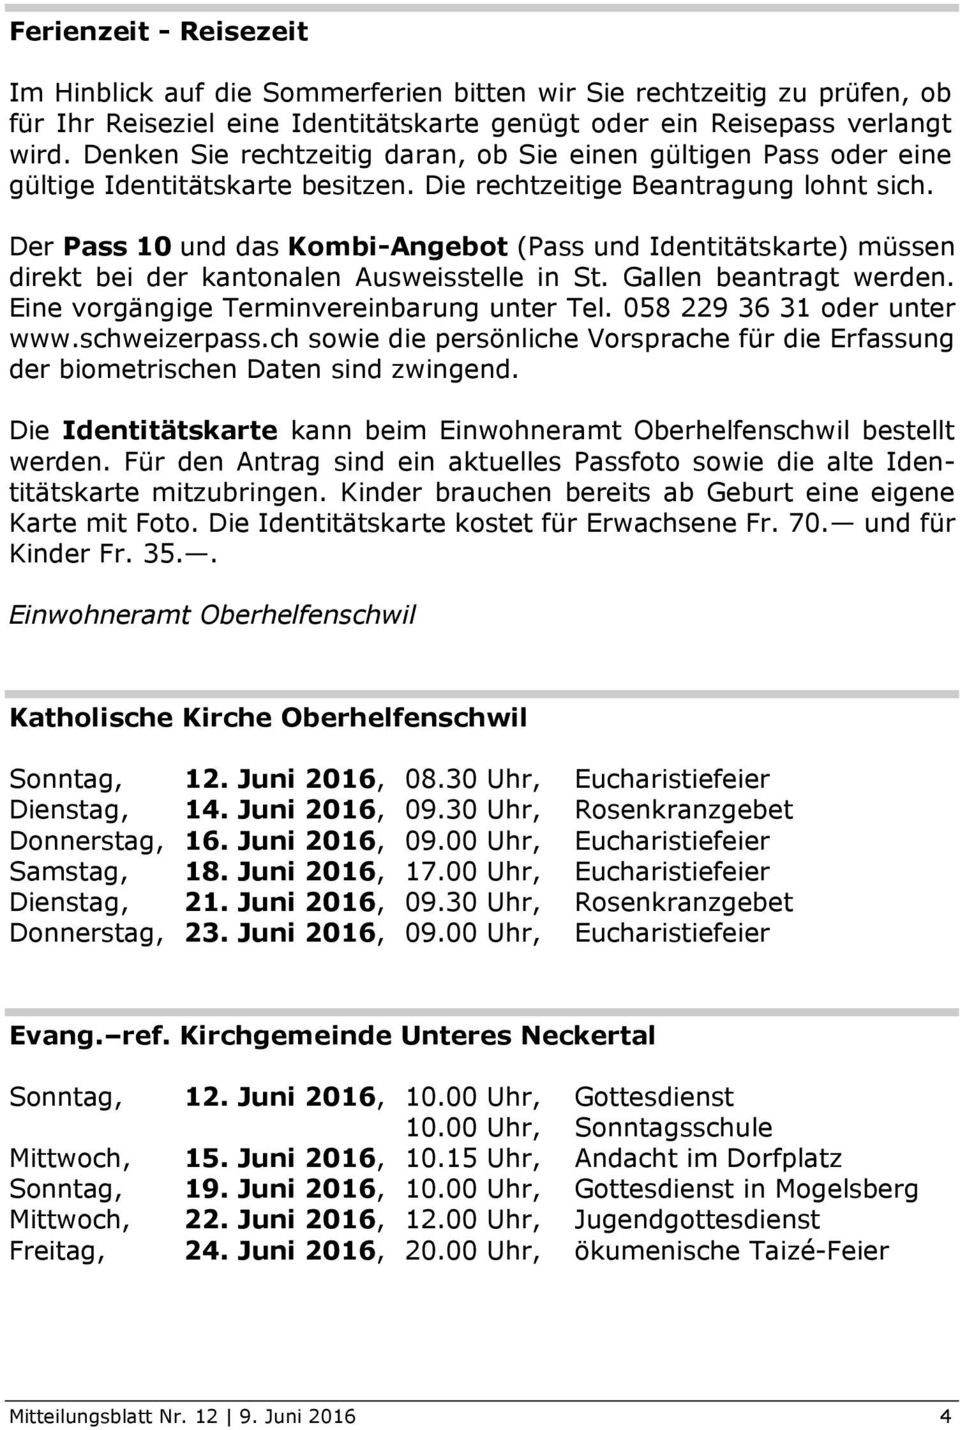 Der Pass 10 und das Kombi-Angebot (Pass und Identitätskarte) müssen direkt bei der kantonalen Ausweisstelle in St. Gallen beantragt werden. Eine vorgängige Terminvereinbarung unter Tel.